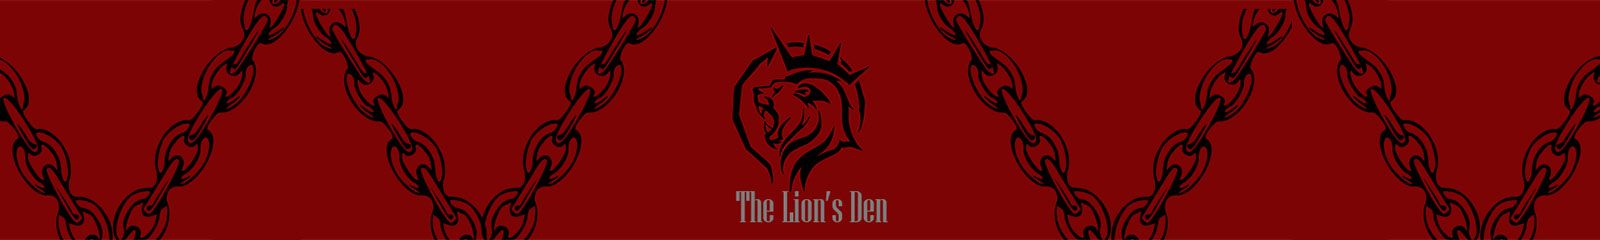 Lion's Den Kink